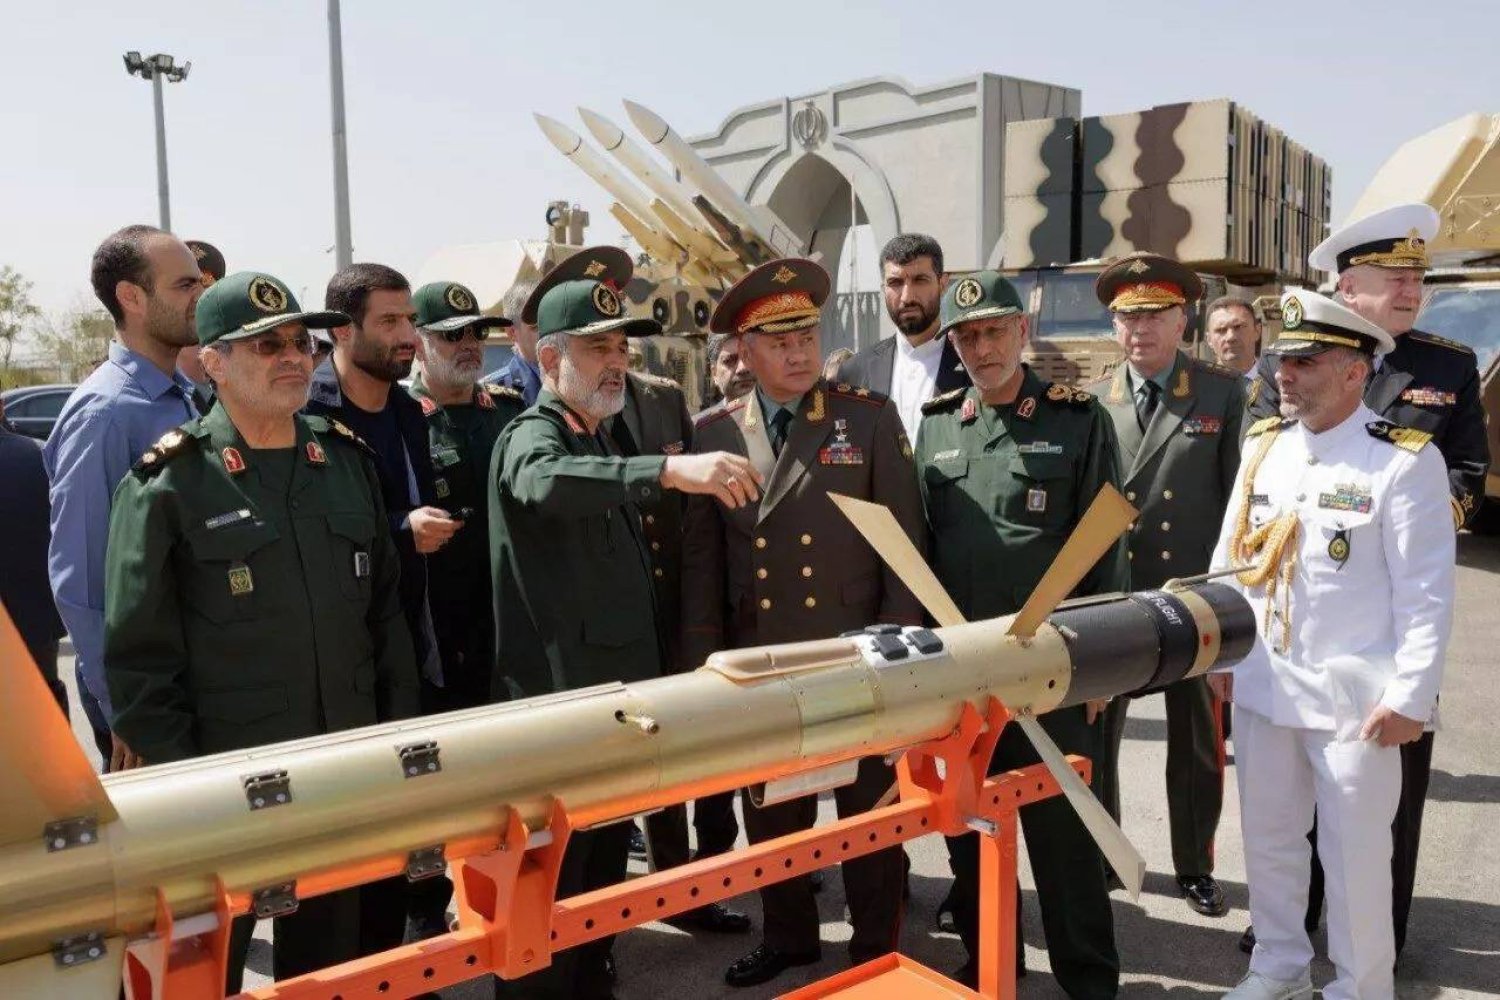 قائد الوحدة الصاروخية في «الحرس الثوري» أمير علي حاجي زاده يقدم شرحاً إلى وزير الدفاع الروسي سيرجي شويغو في معرض الصواريخ الإيراني 20 سبتمبر الماضي (إرنا)